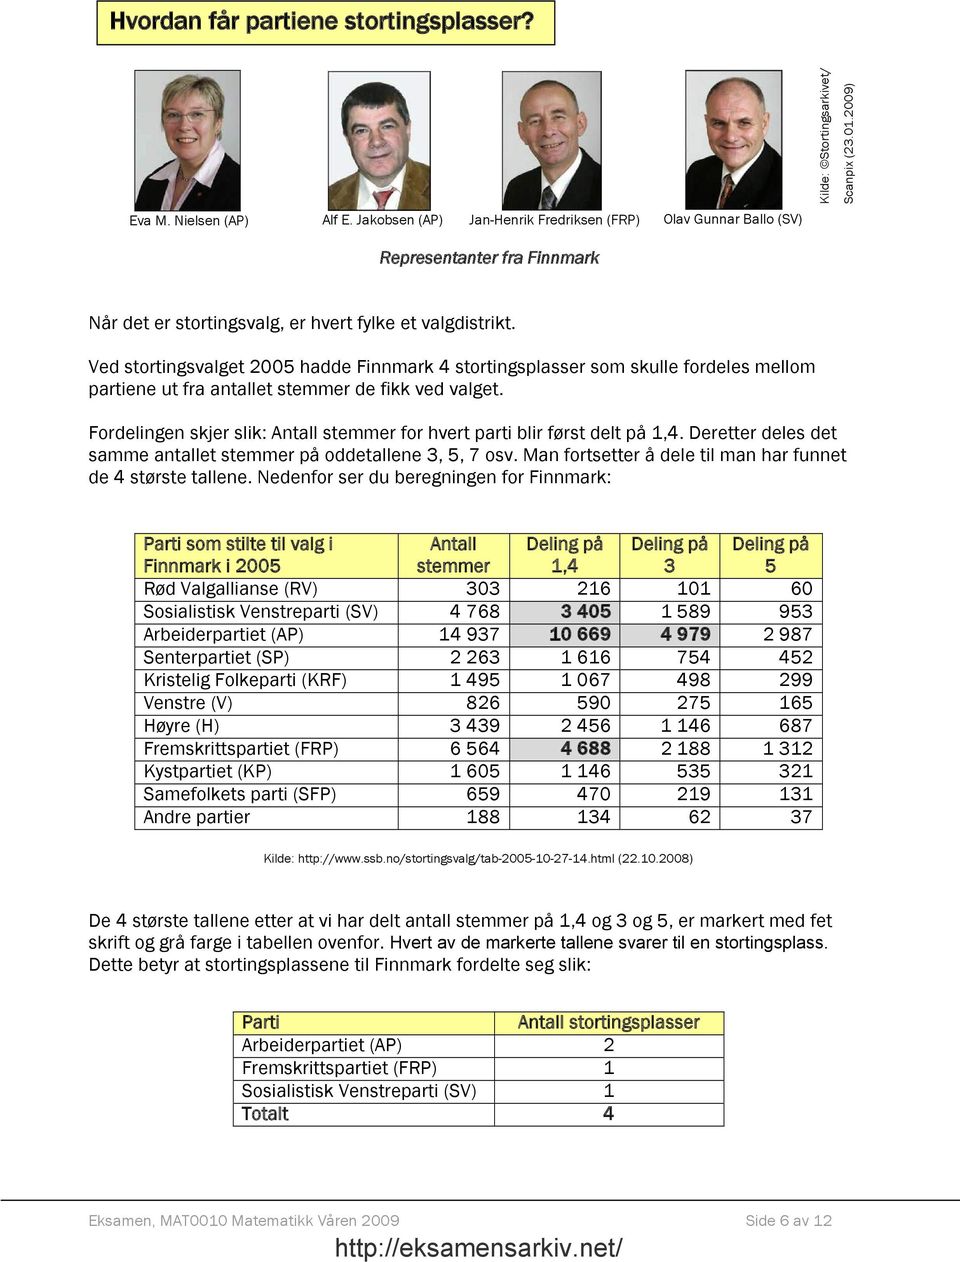 Ved stortingsvalget 2005 hadde Finnmark 4 stortingsplasser som skulle fordeles mellom partiene ut fra antallet stemmer de fikk ved valget.